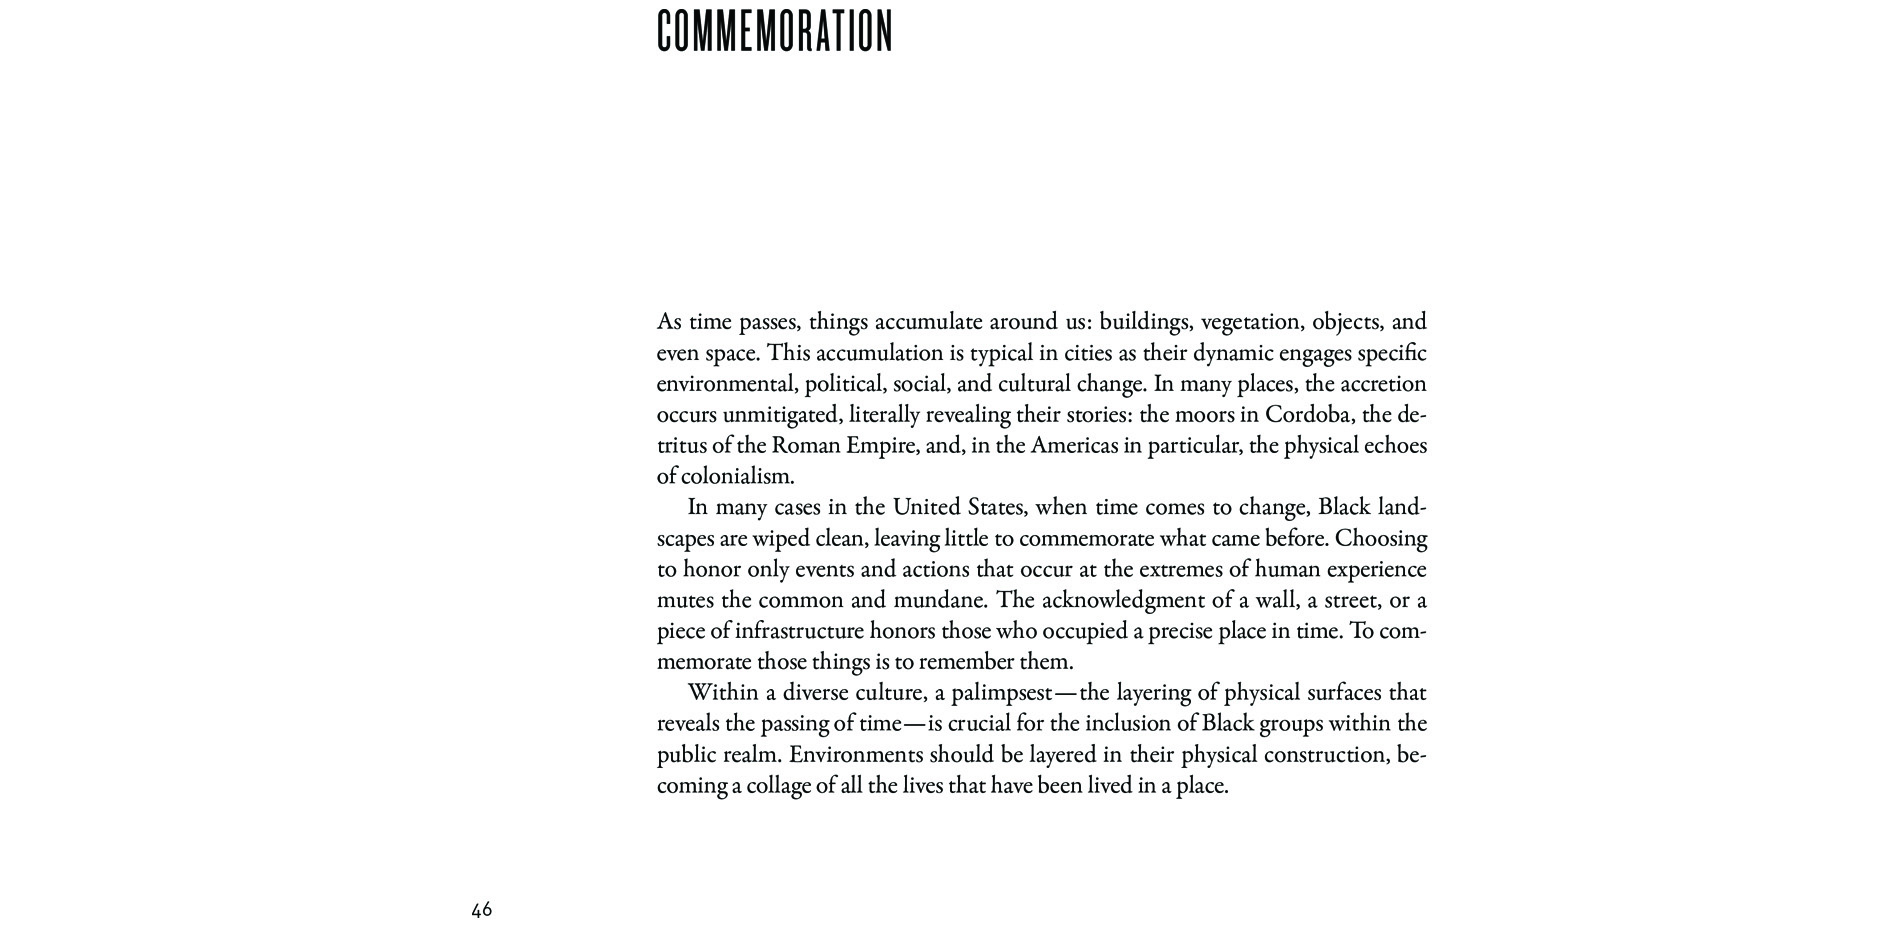 Black Landscapes Matter, Commemoration (pg. 46)